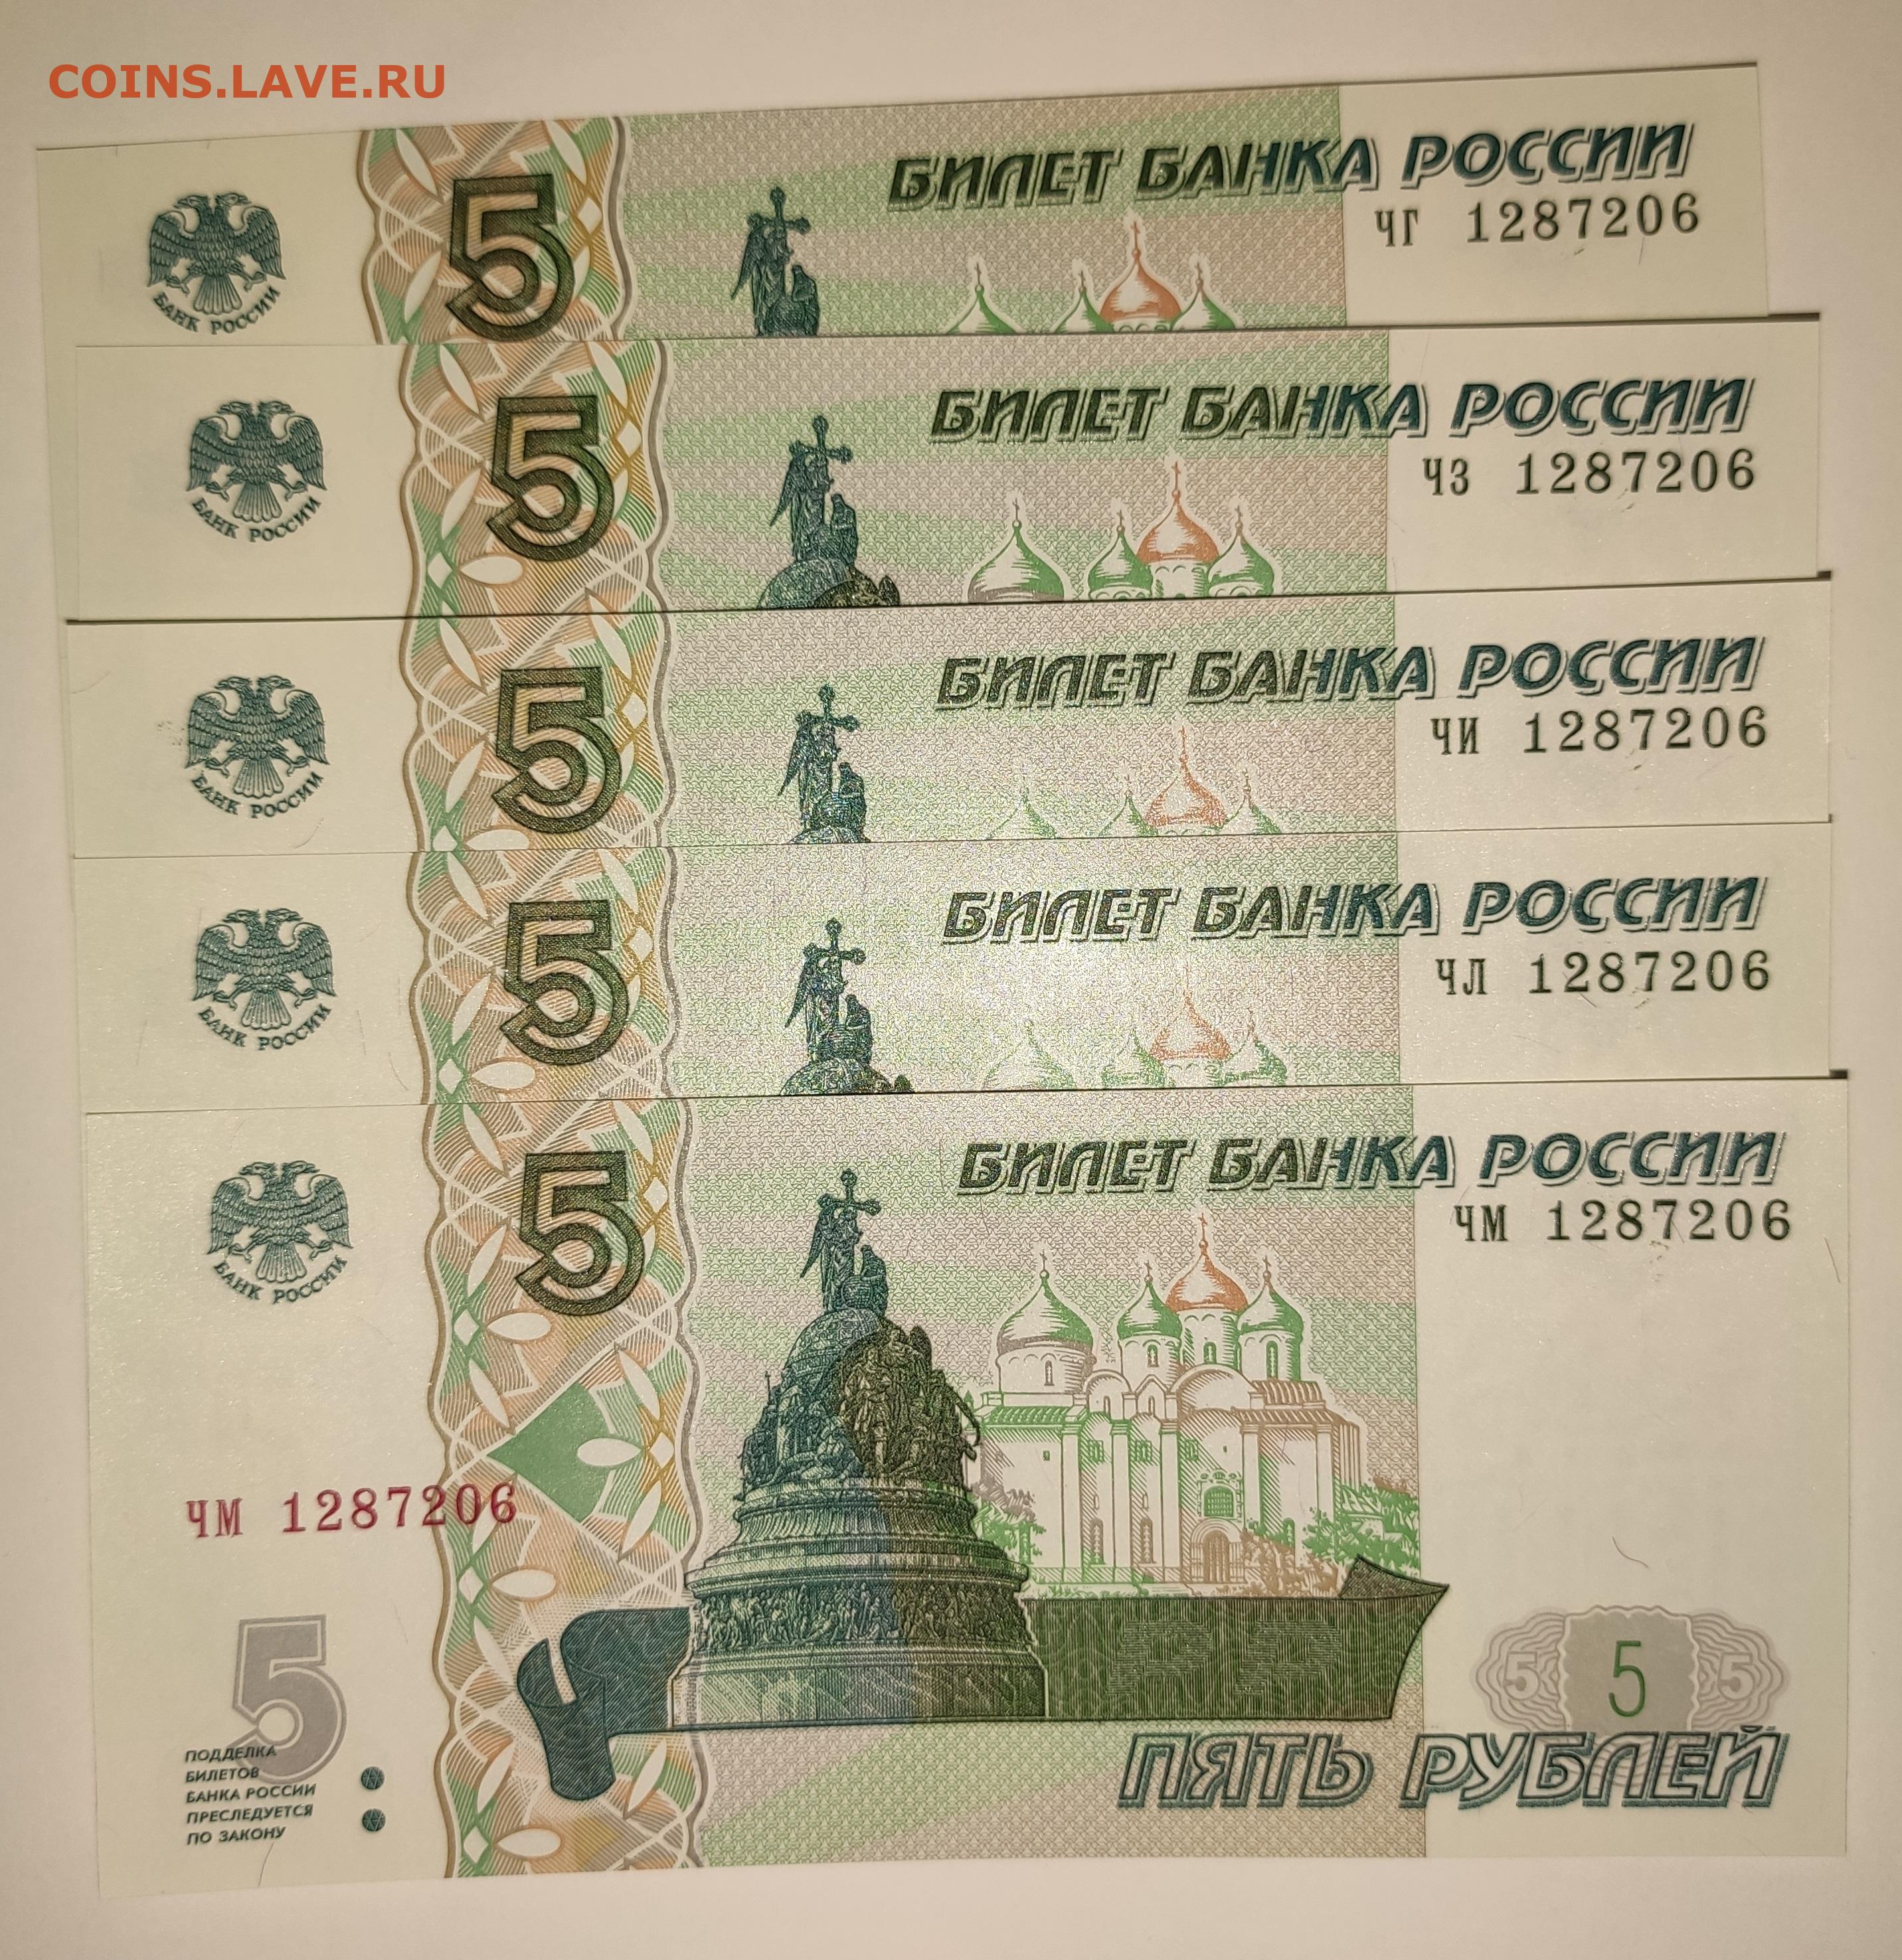 5 рублей бумажные в обороте. 5 Рублей бумажные. Старые 5 рублей бумажные. Редкие 5 рублей бумажные. 5 Рублей бумажные 2003 год.